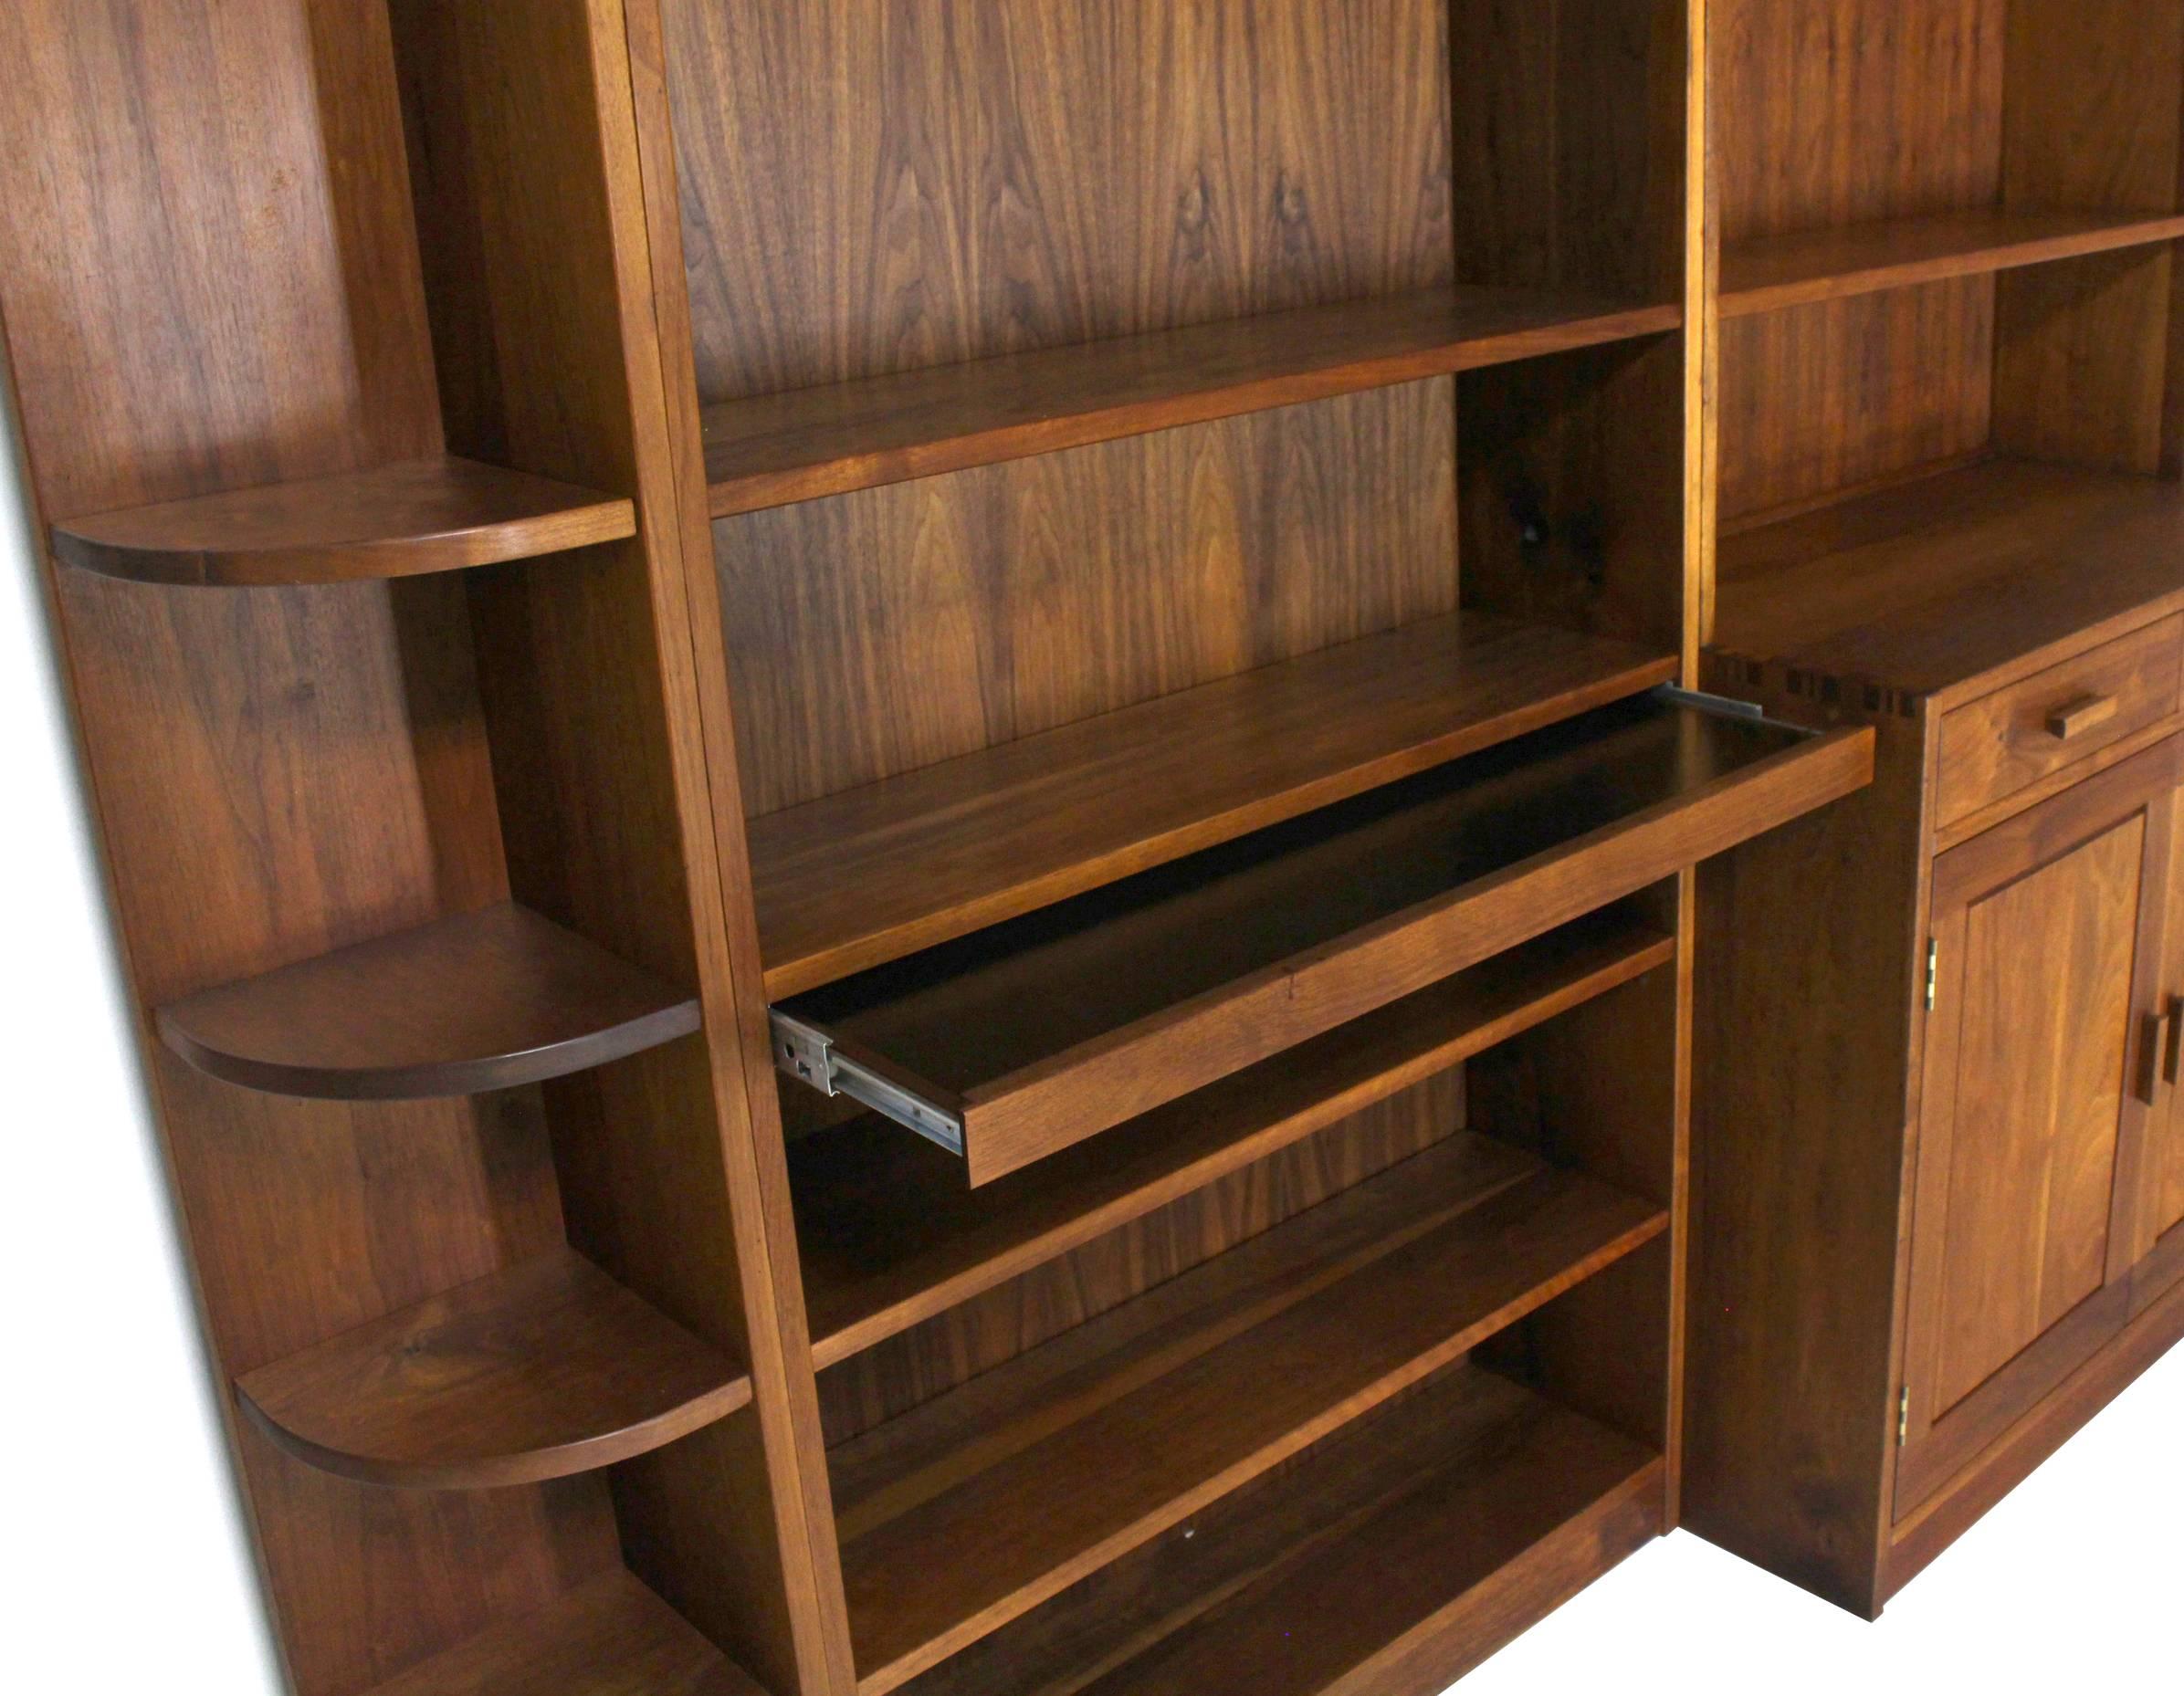 Oiled Large All Solid Walnut Shelving Wall Unit Bookcase Nakashima Style